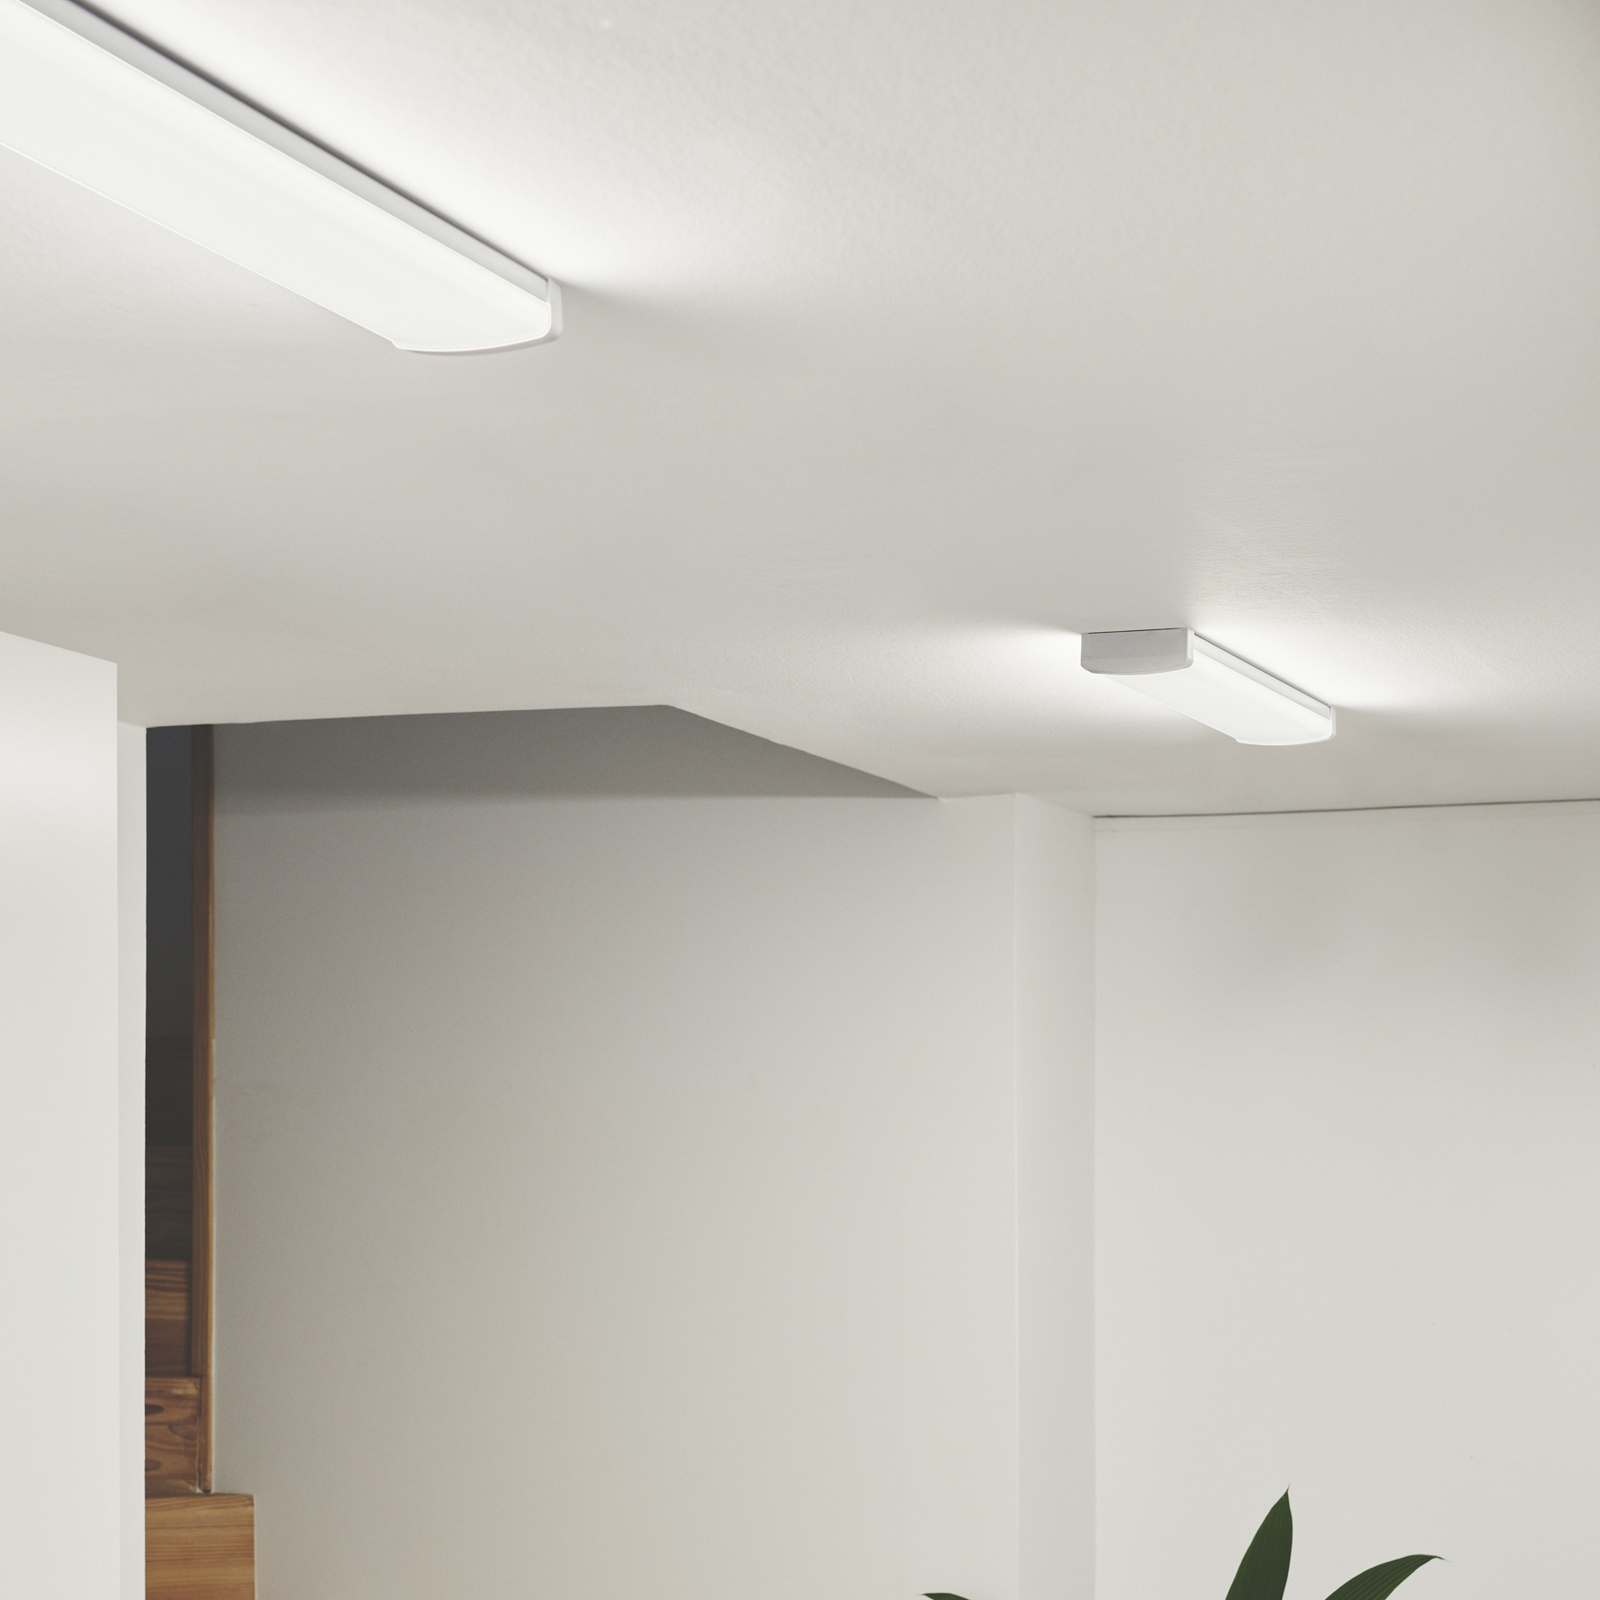 Svetelný pás LED Wilmington, dĺžka 60,5 cm, biely, plast